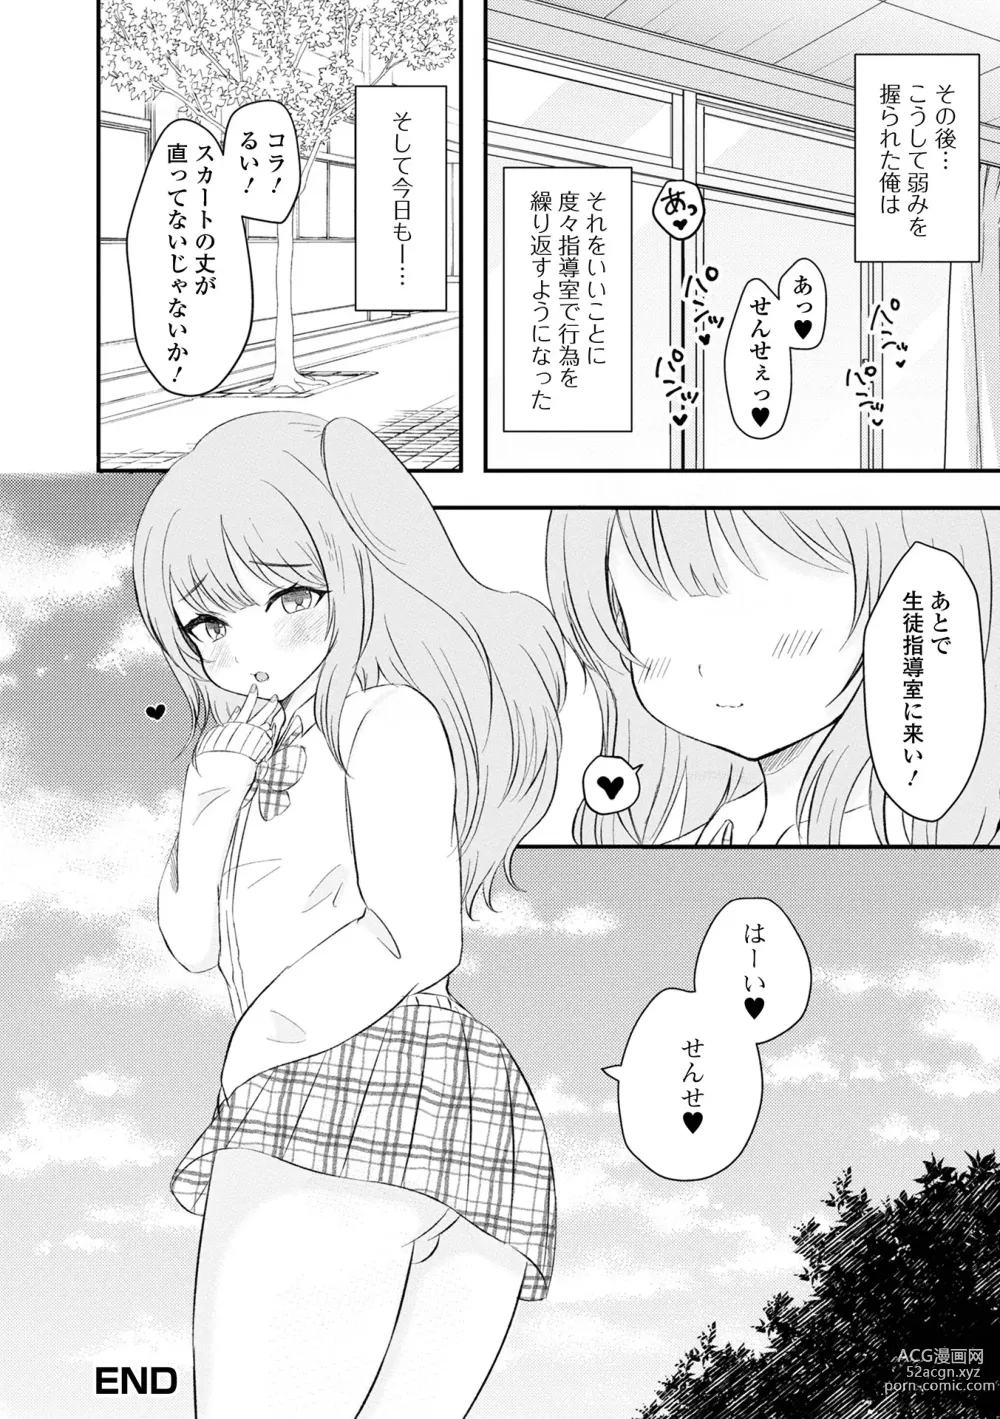 Page 98 of manga Gekkan Web Otoko no Ko-llection! S Vol. 86